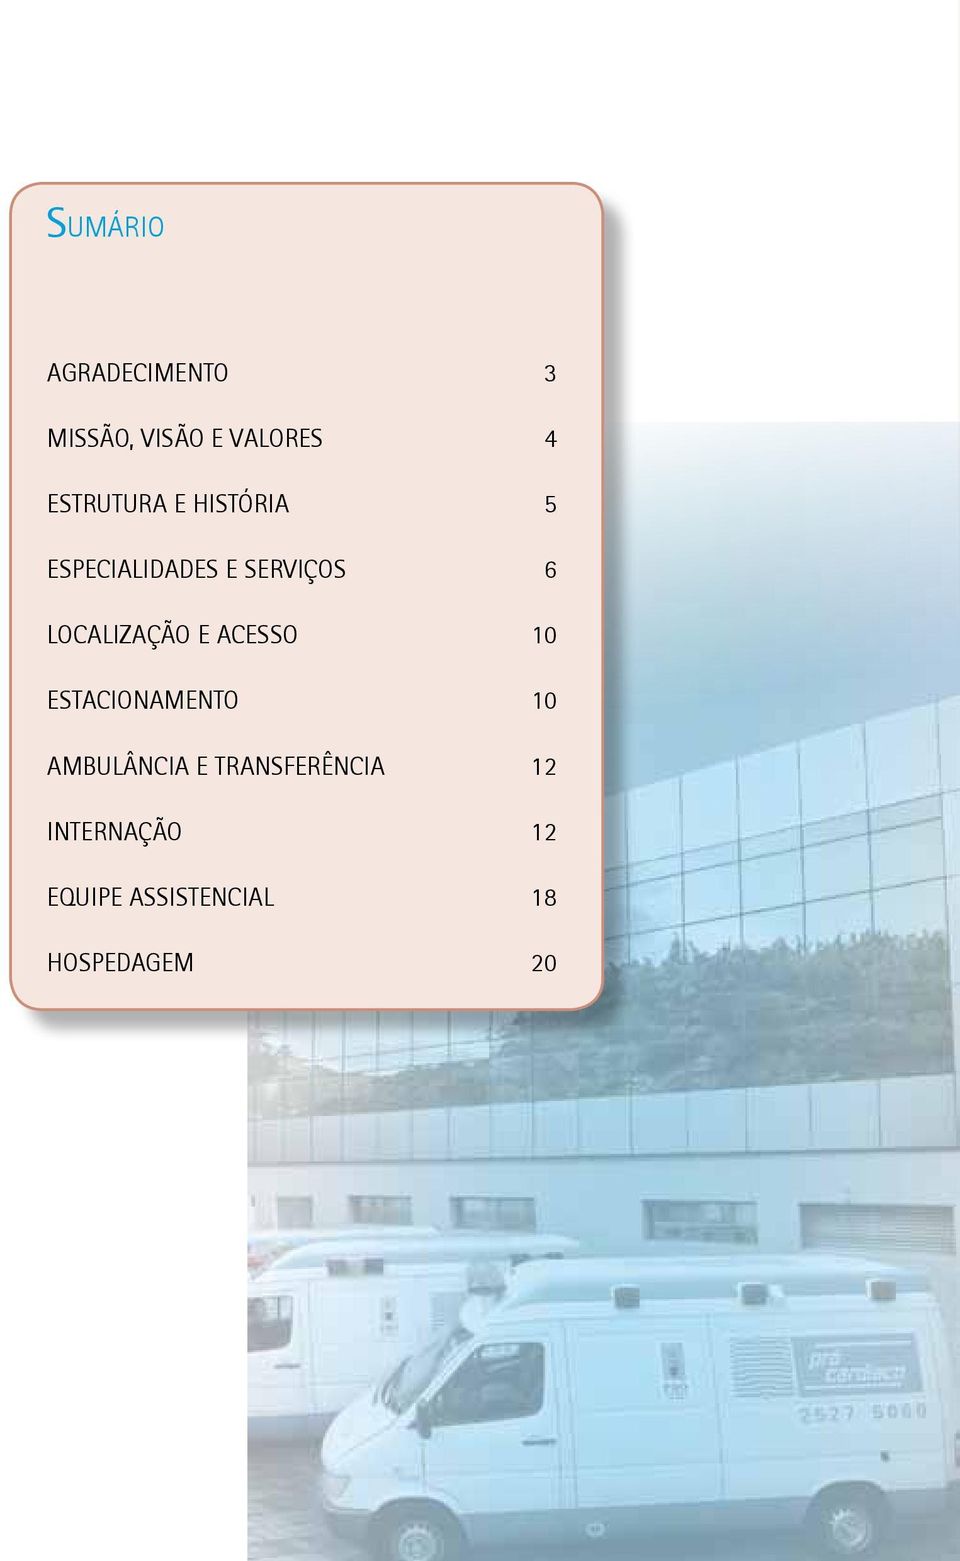 Especialidades e serviços 6 Localização e acesso 10 ESTACIONAMENTO